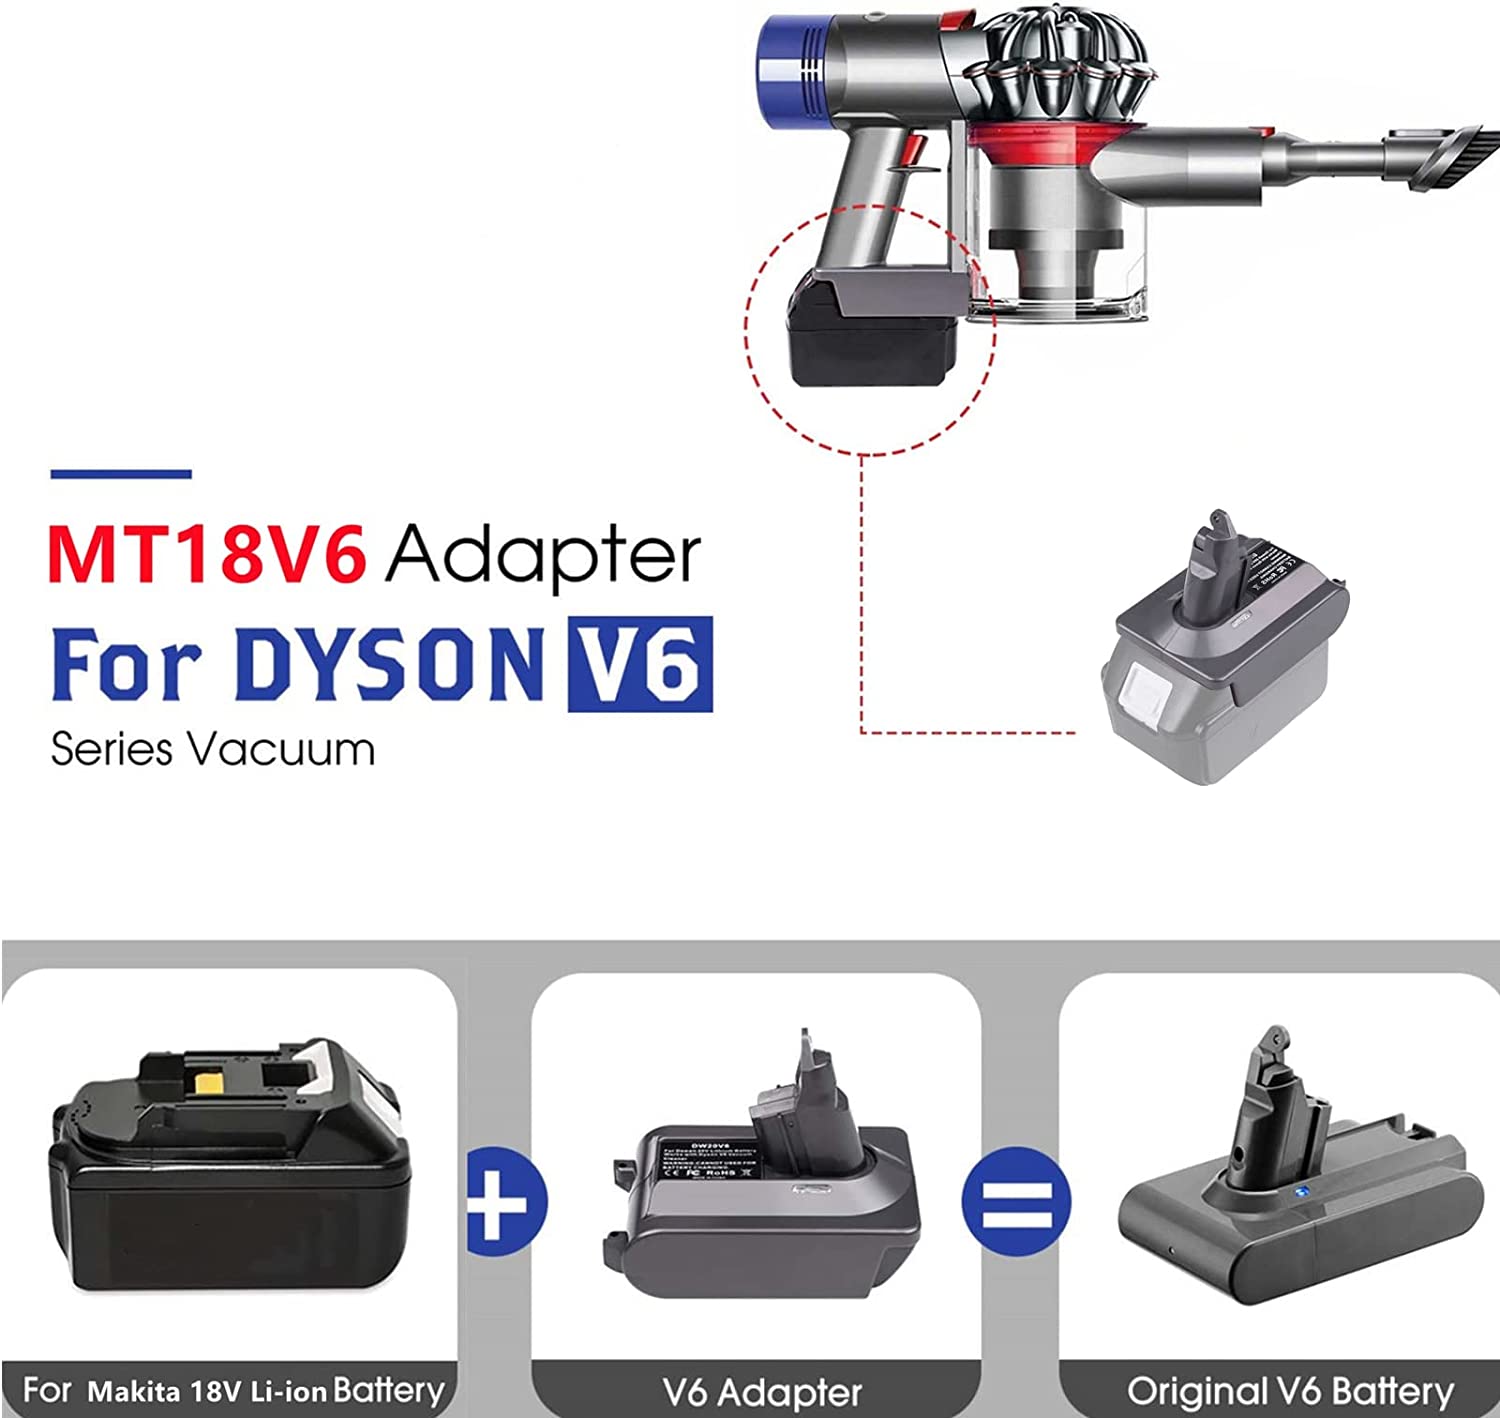 Адаптер за батерия Dyson V6 за литиева батерия Makita 18V, преобразувана в батерия Dyson V6